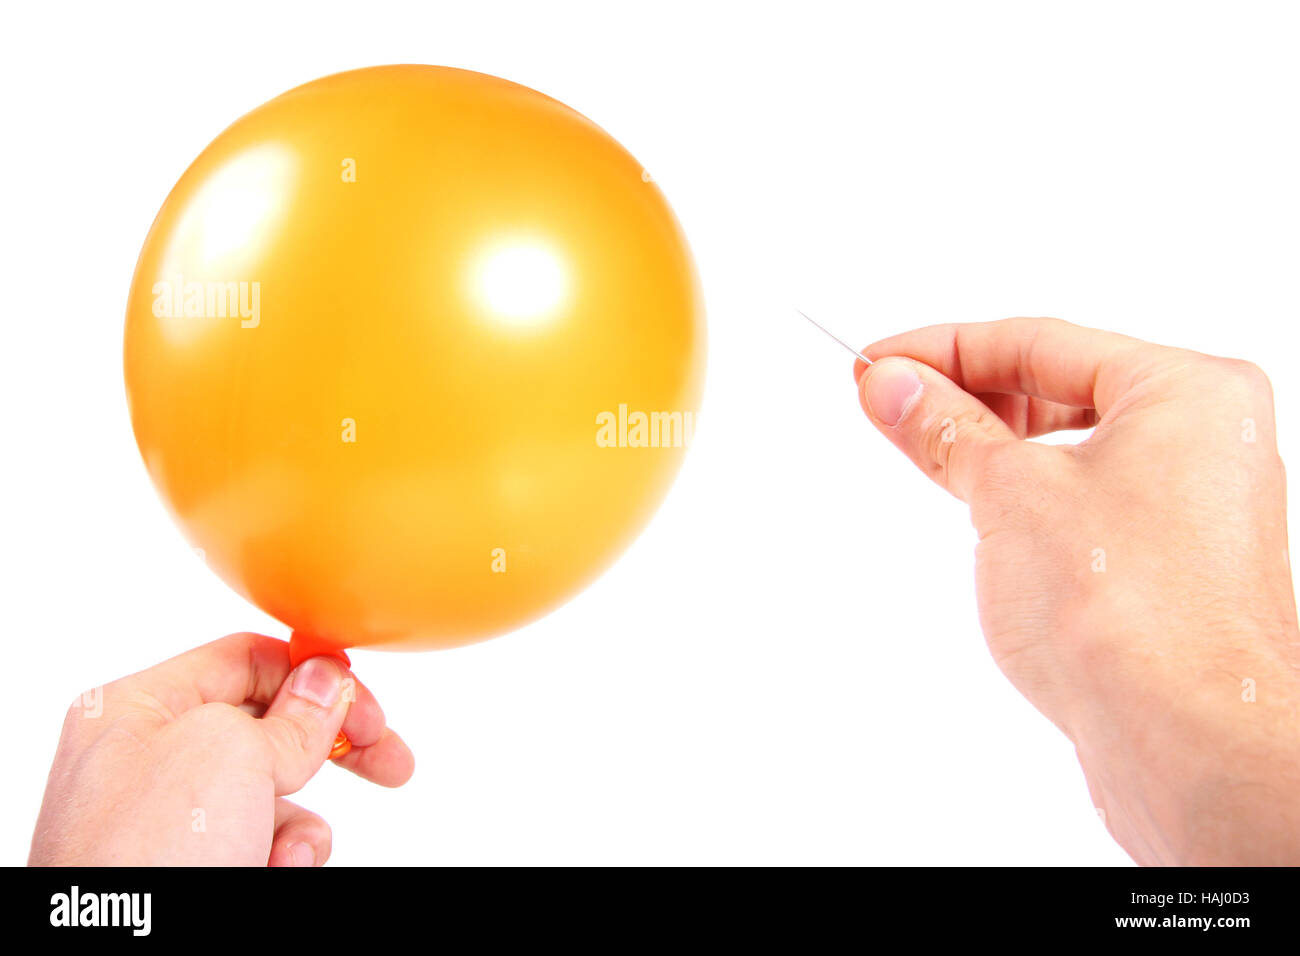 balloon and needle Stock Photo - Alamy